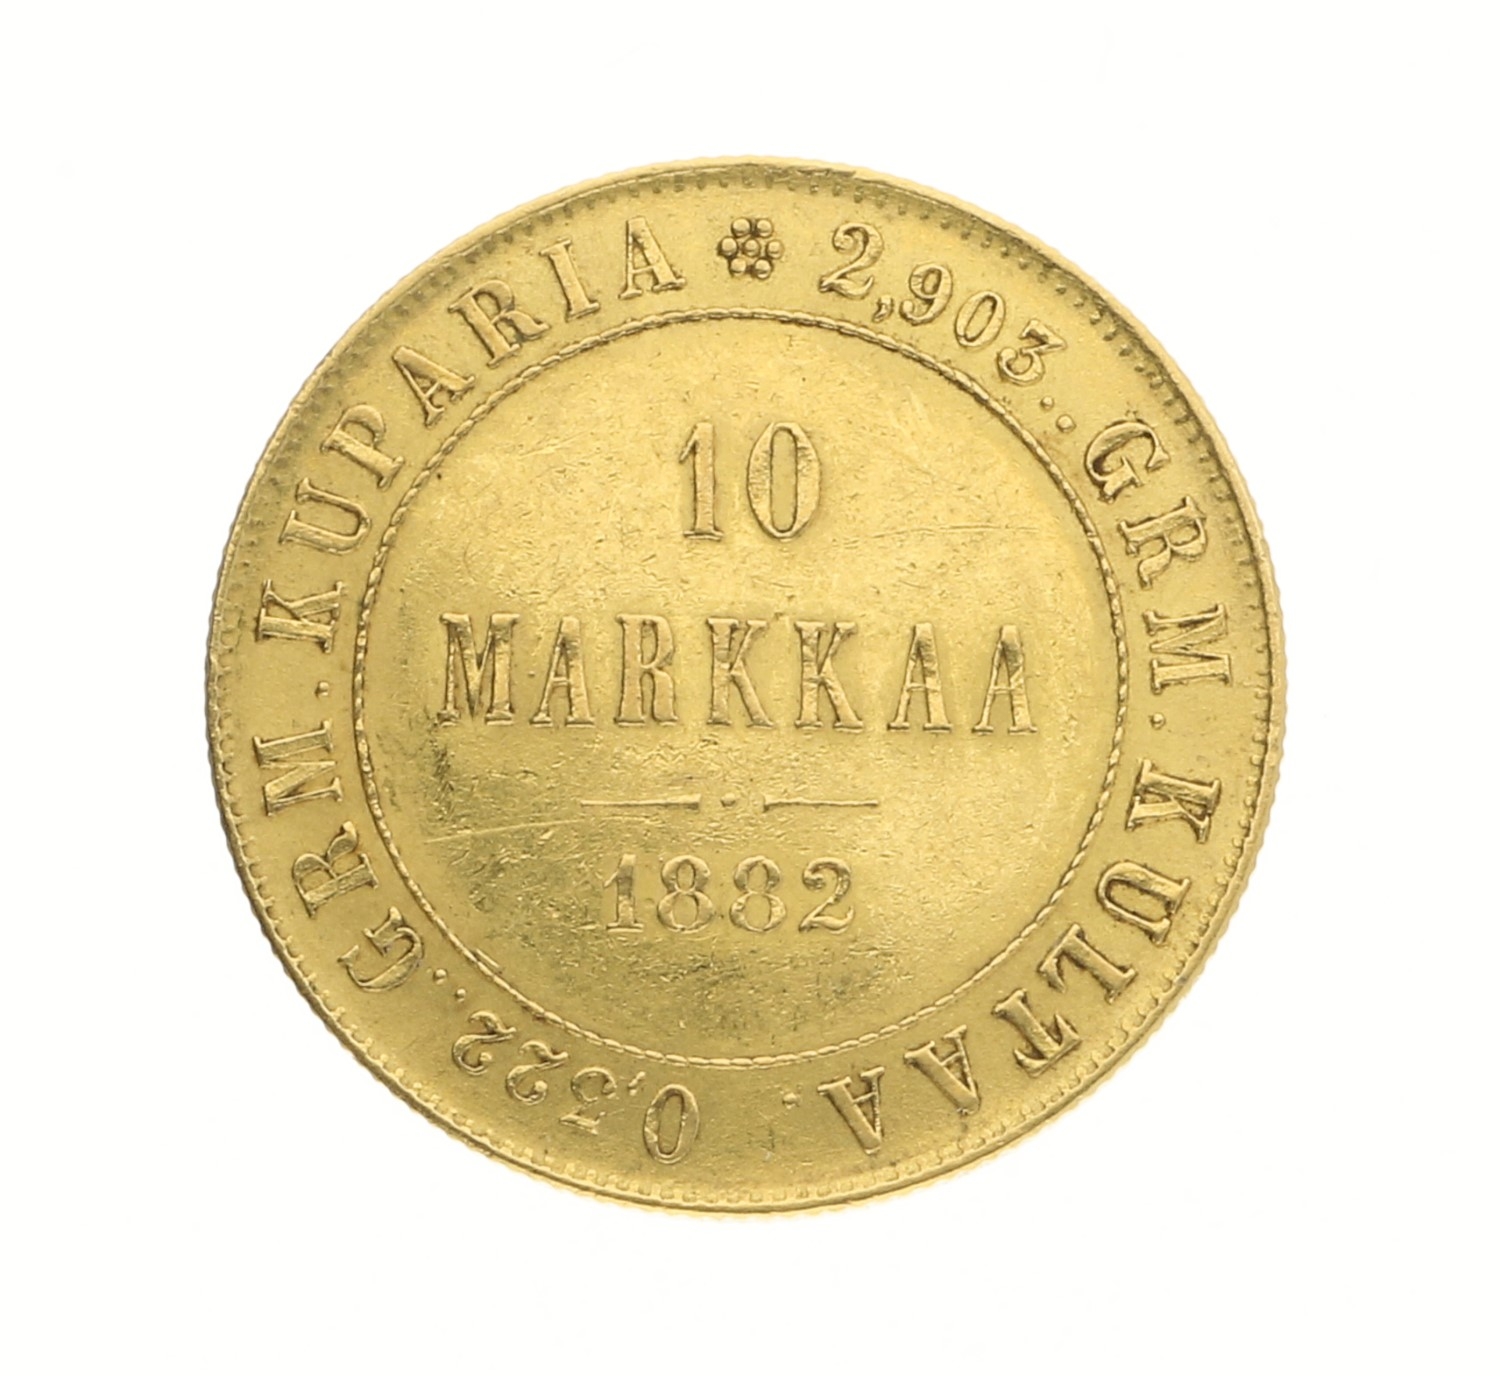 10 Markkaa - Finland - 1882